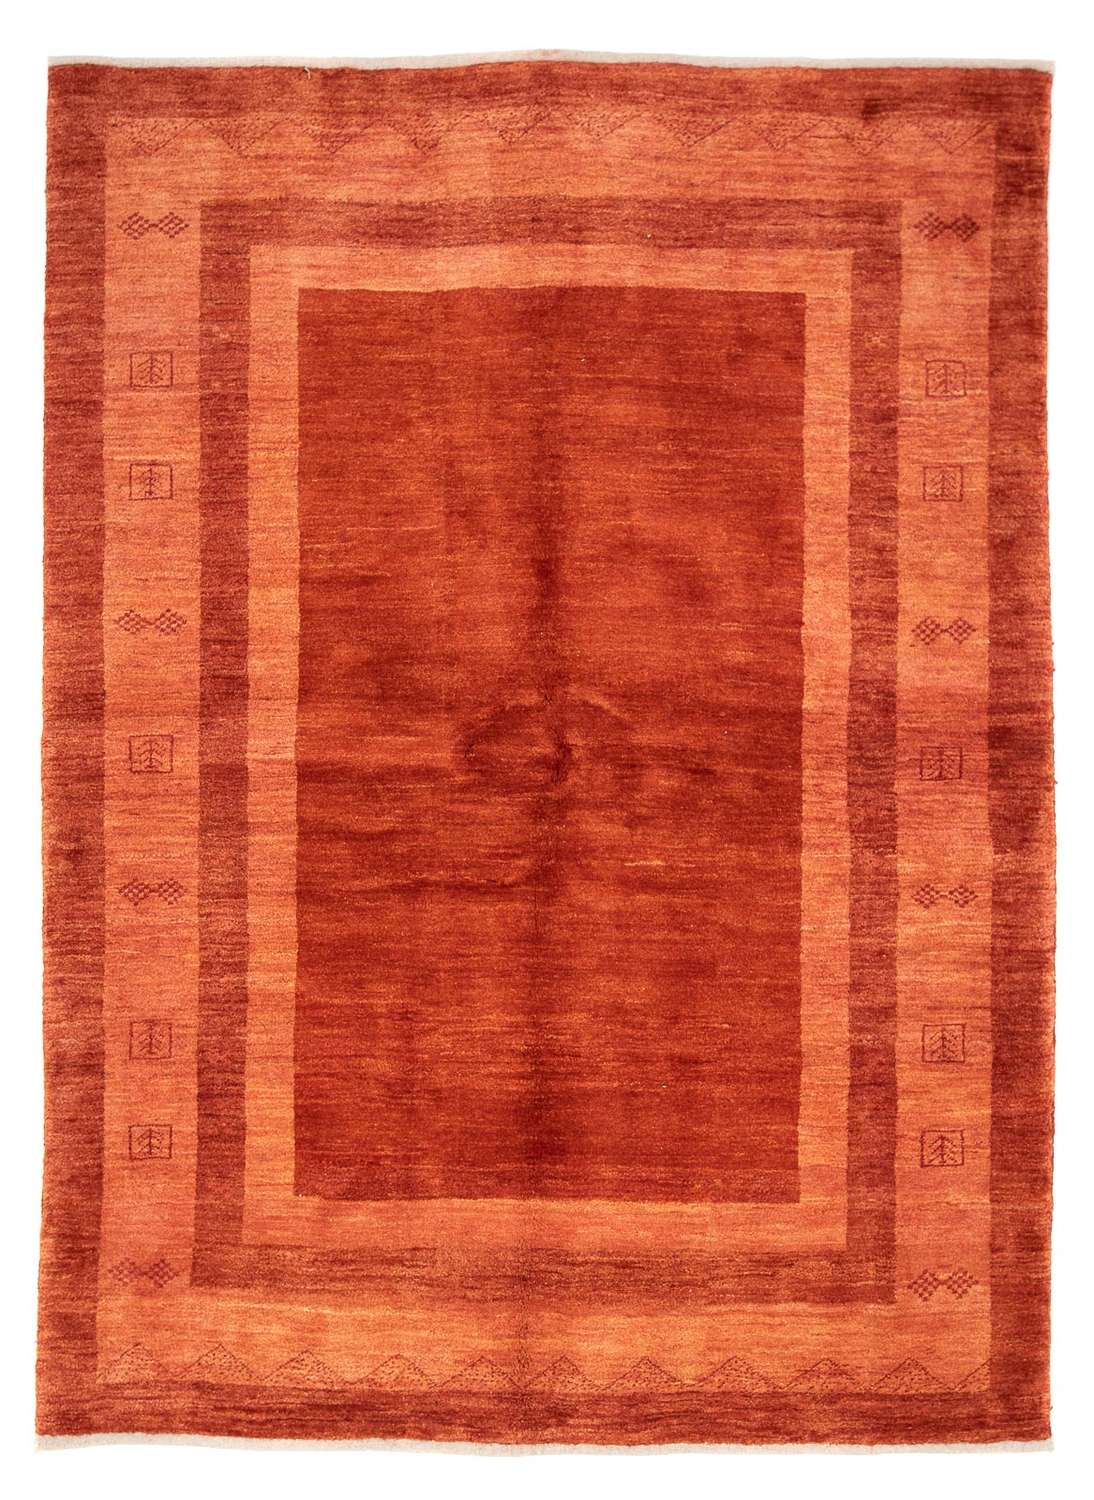 Gabbeh Rug - Perser - 242 x 170 cm - dark red